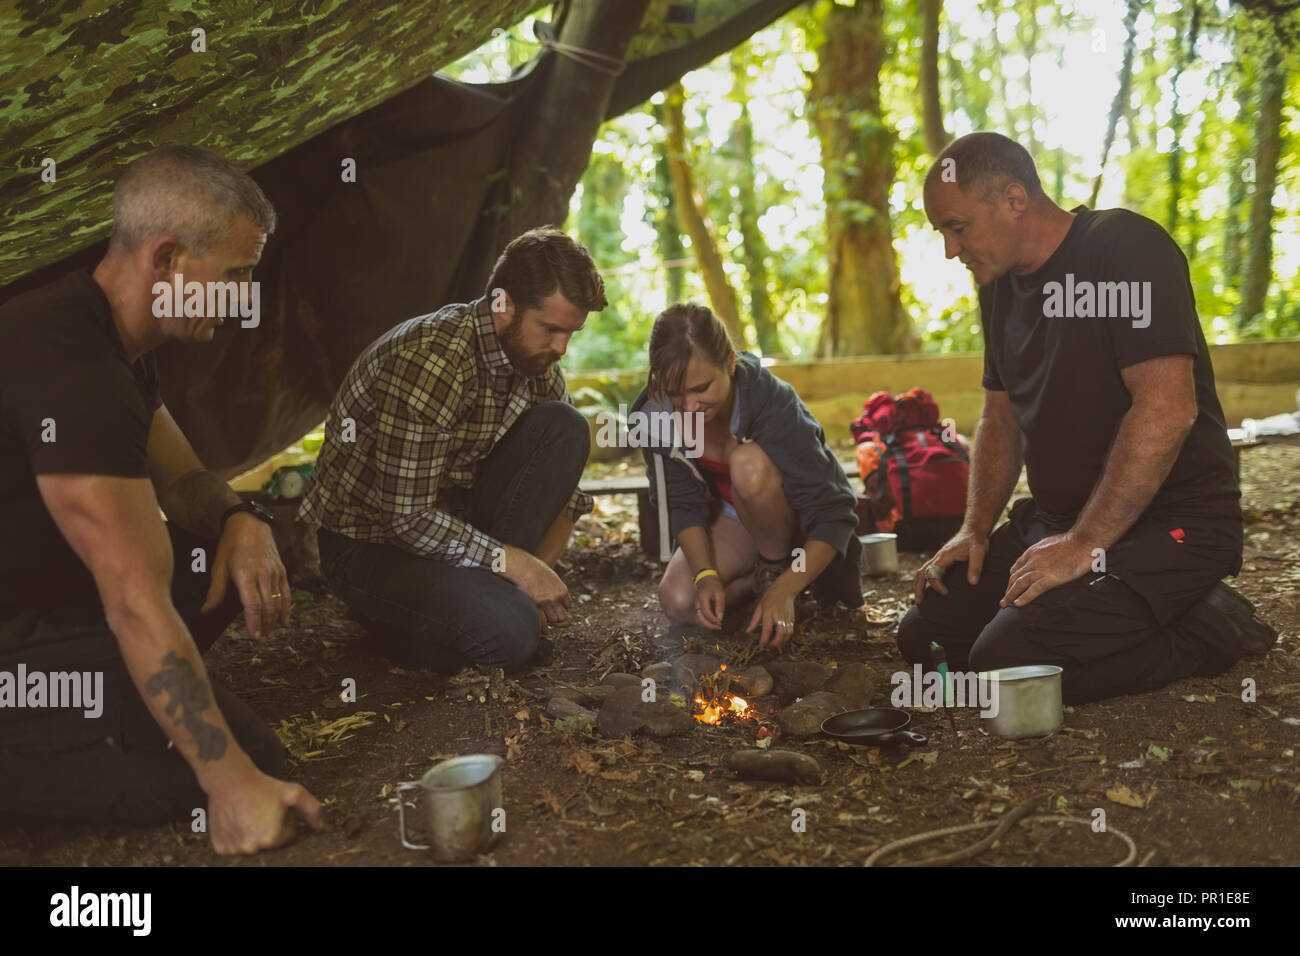 Grupo de personas relajante en boot camp Foto de stock